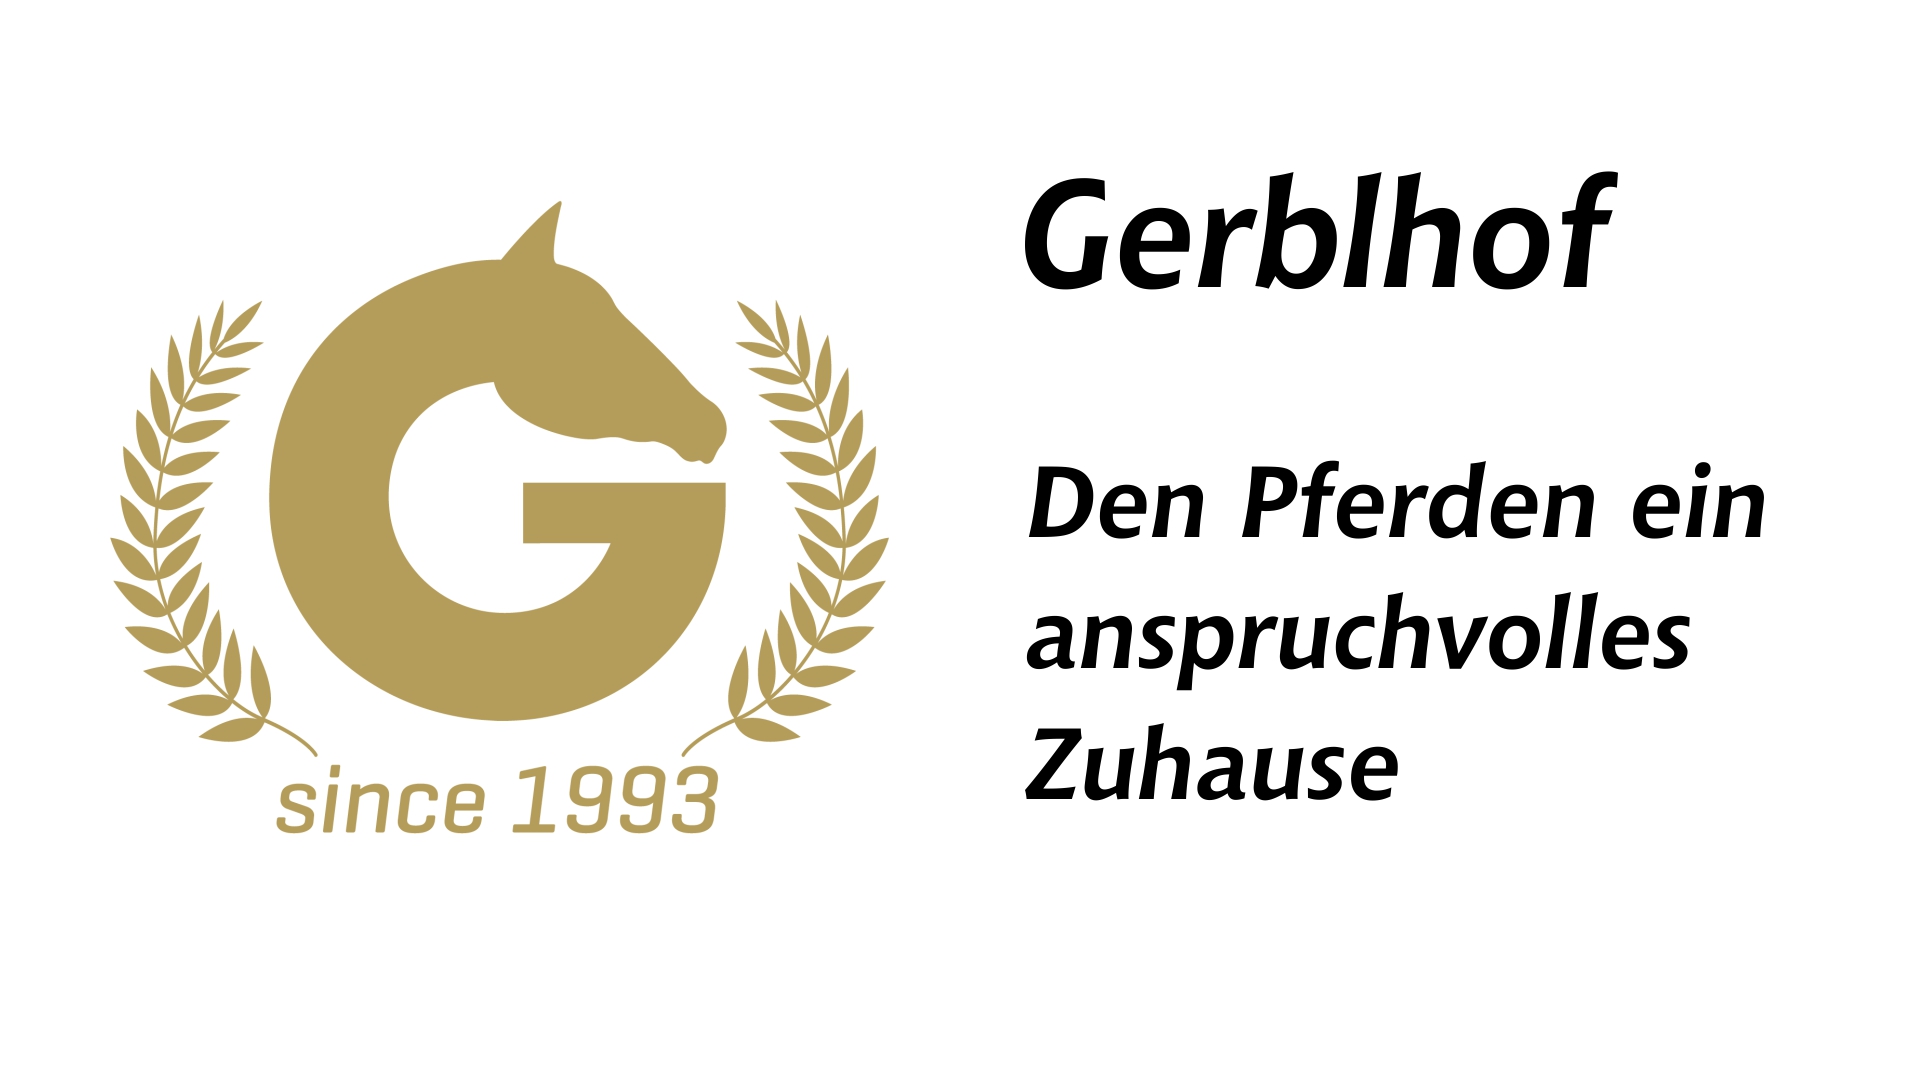 Gerblhof